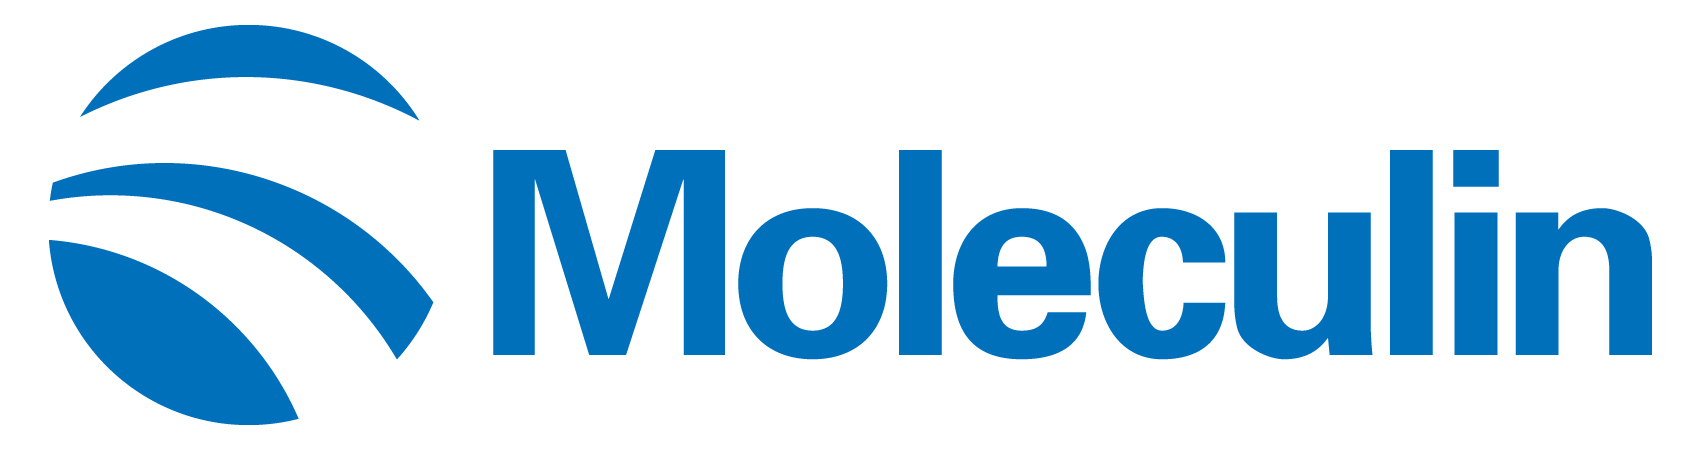 moleculin-logo_horiza15.jpg